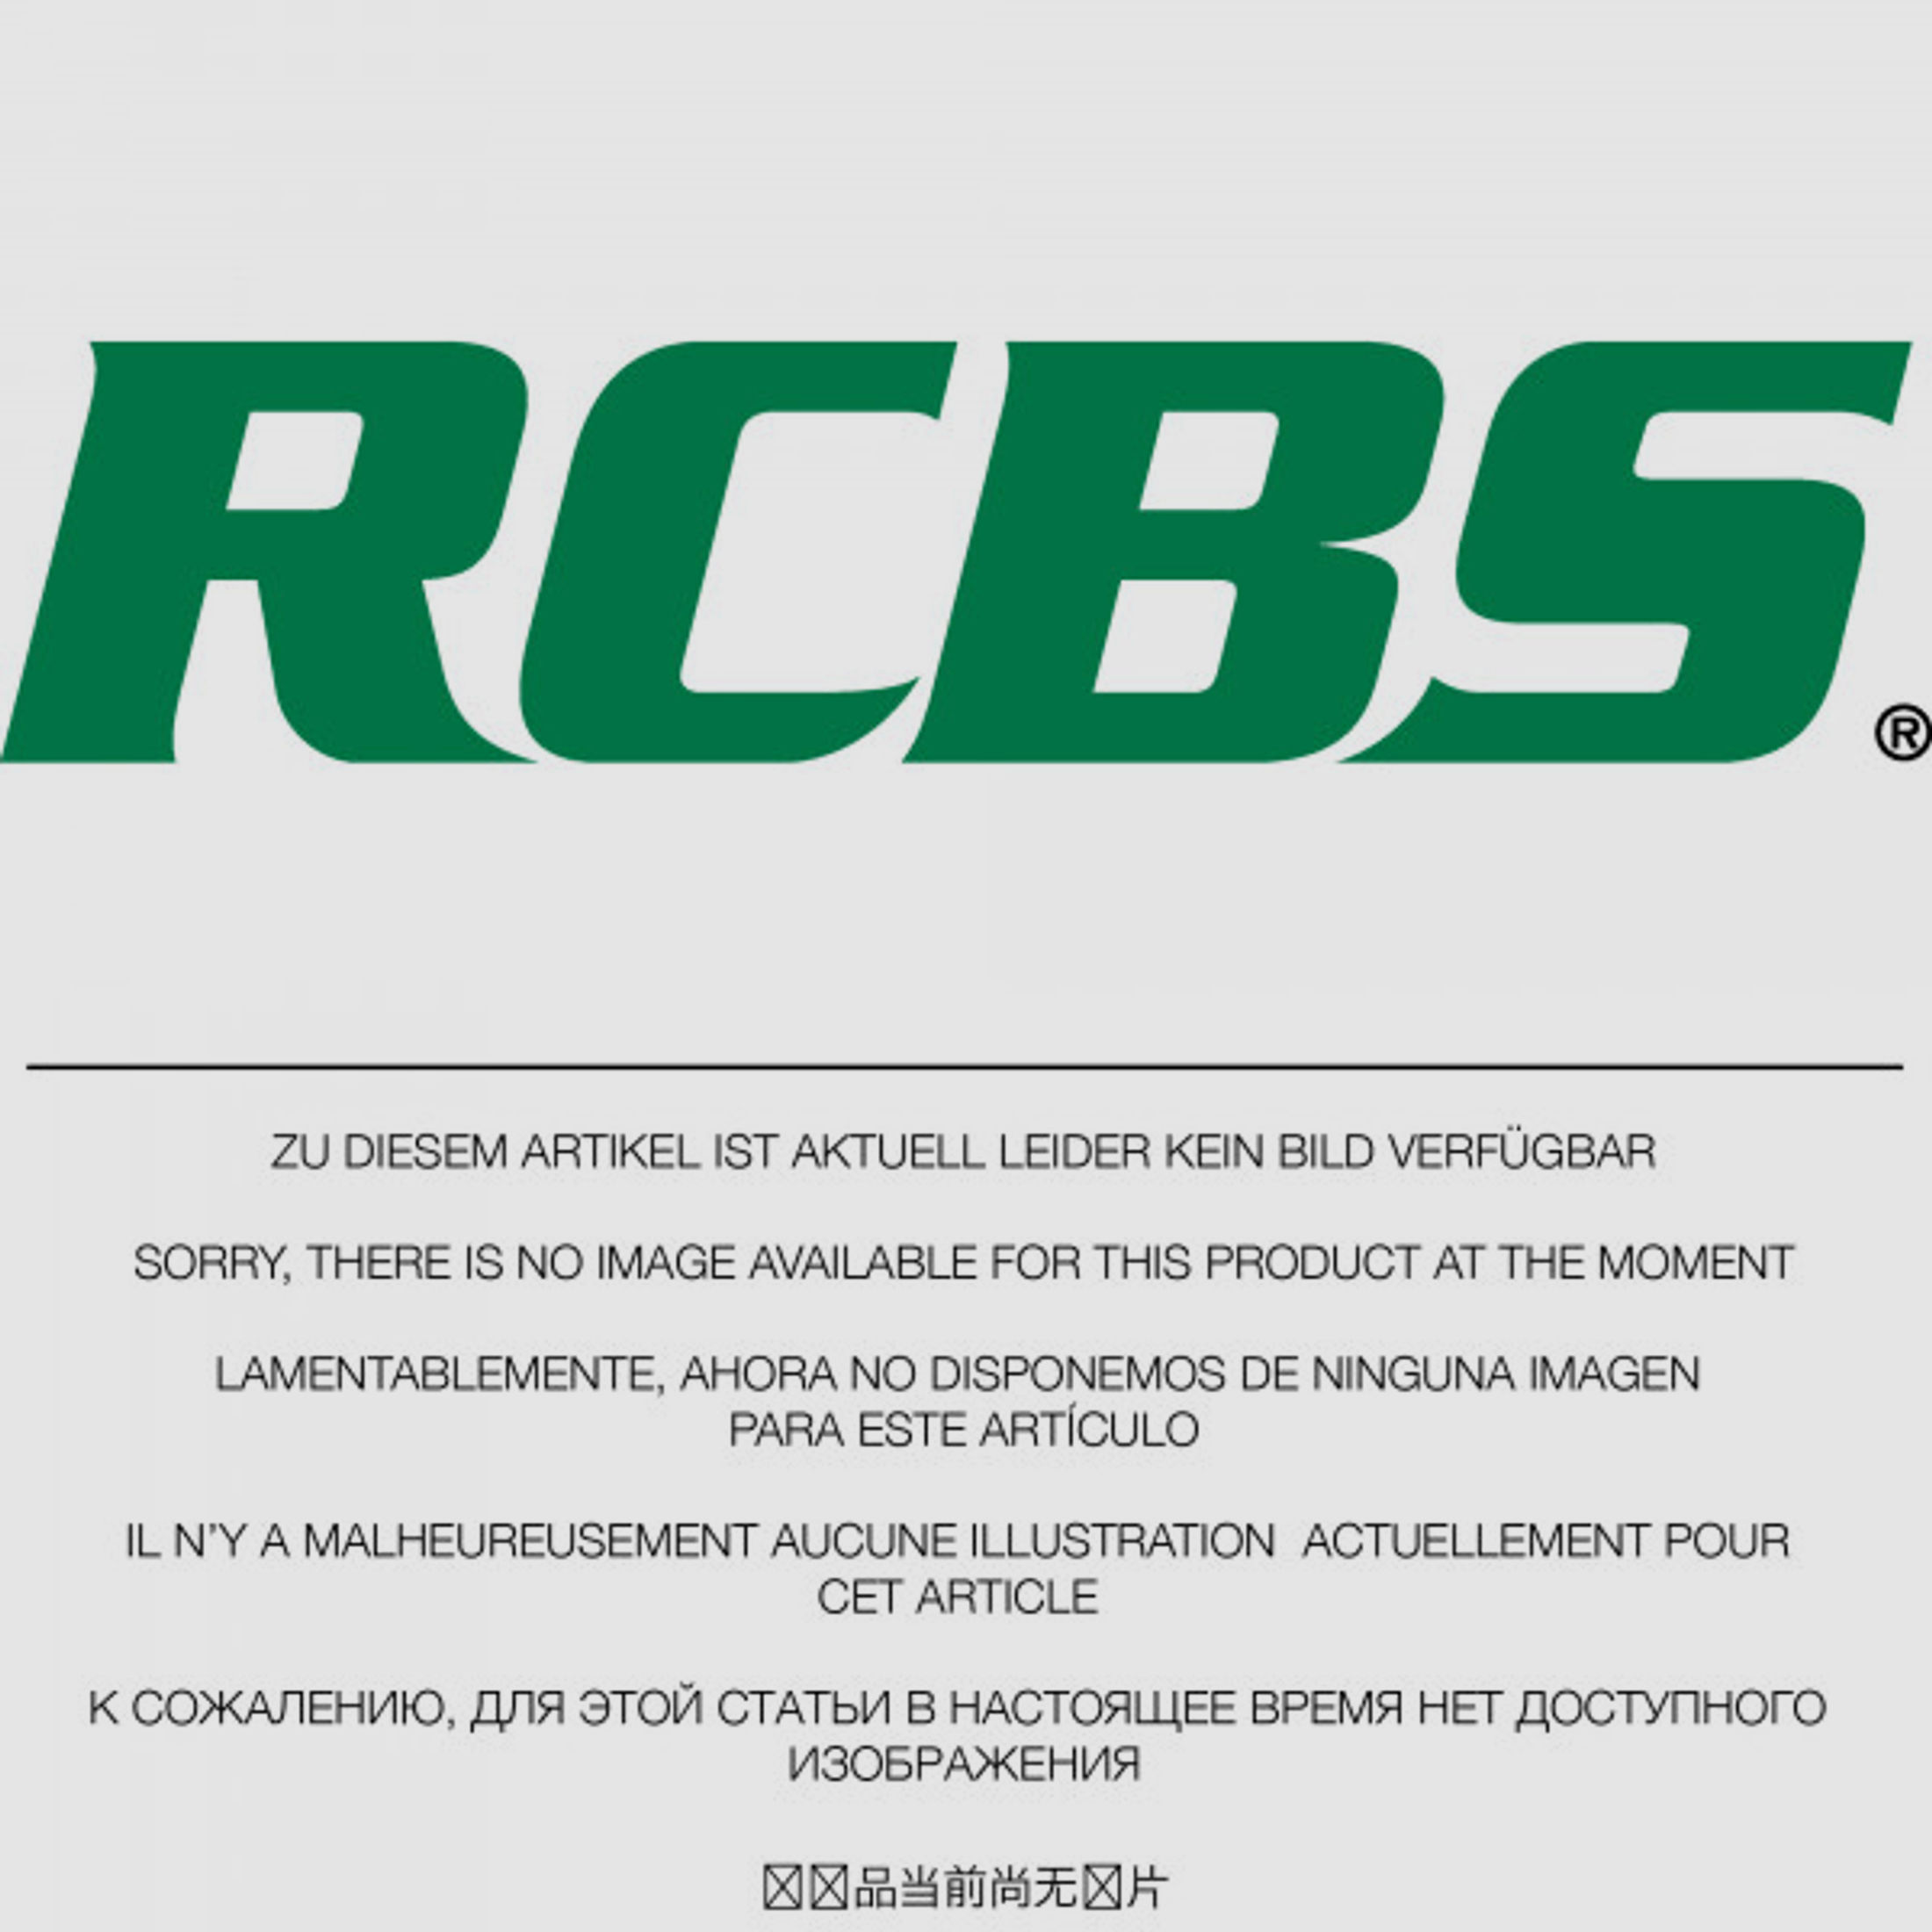 RCBS Lube-A-Matic Top Punch Geschoss Setzstempel Nr. 529 #85529